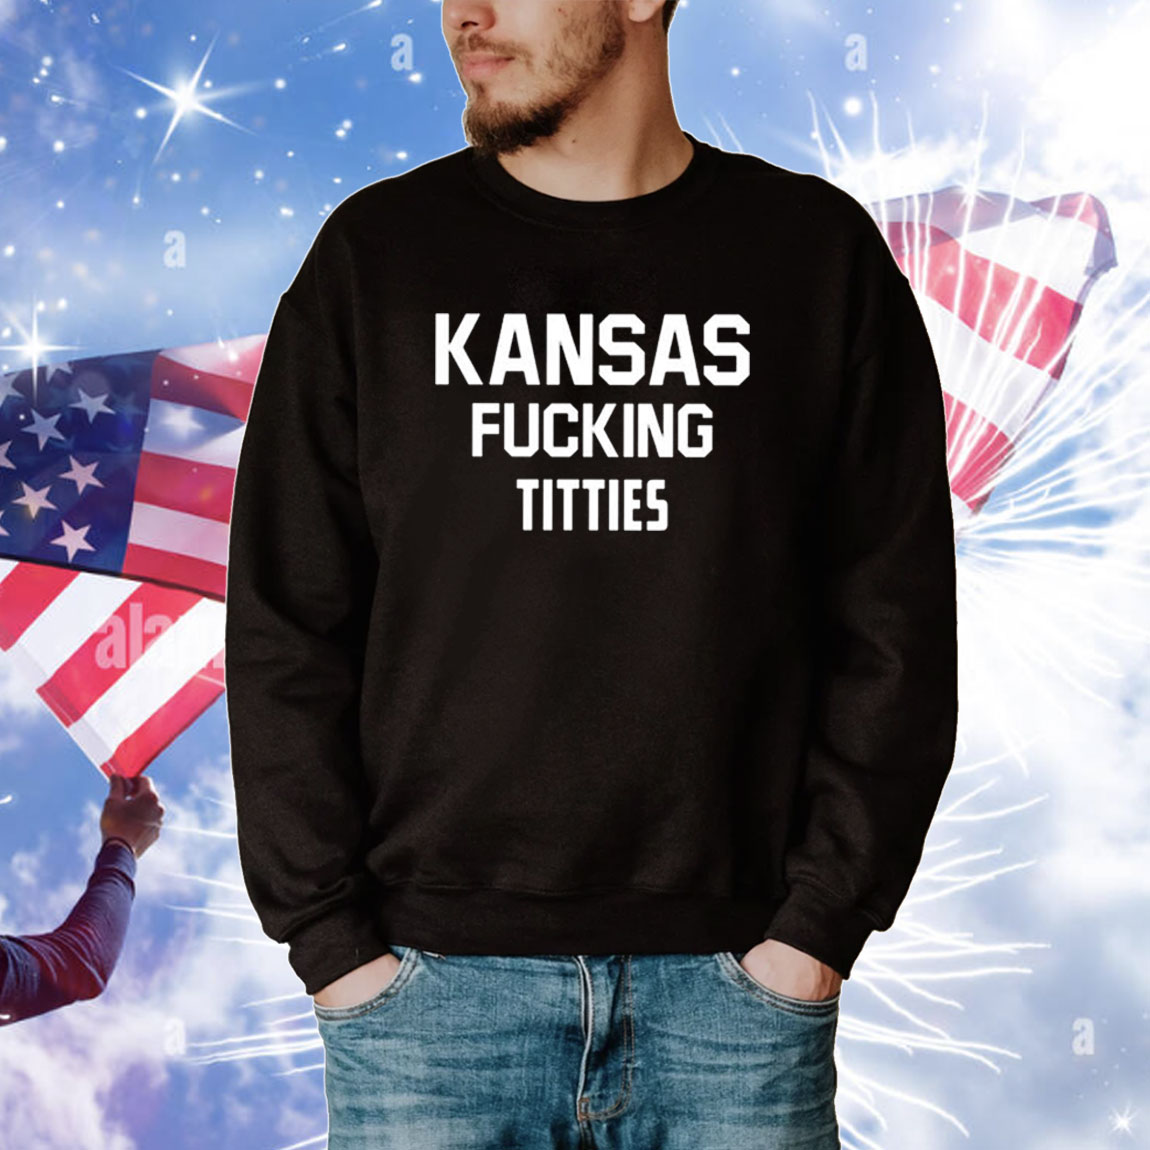 Kansas Fucking Titties Hoodie Tee Shirts